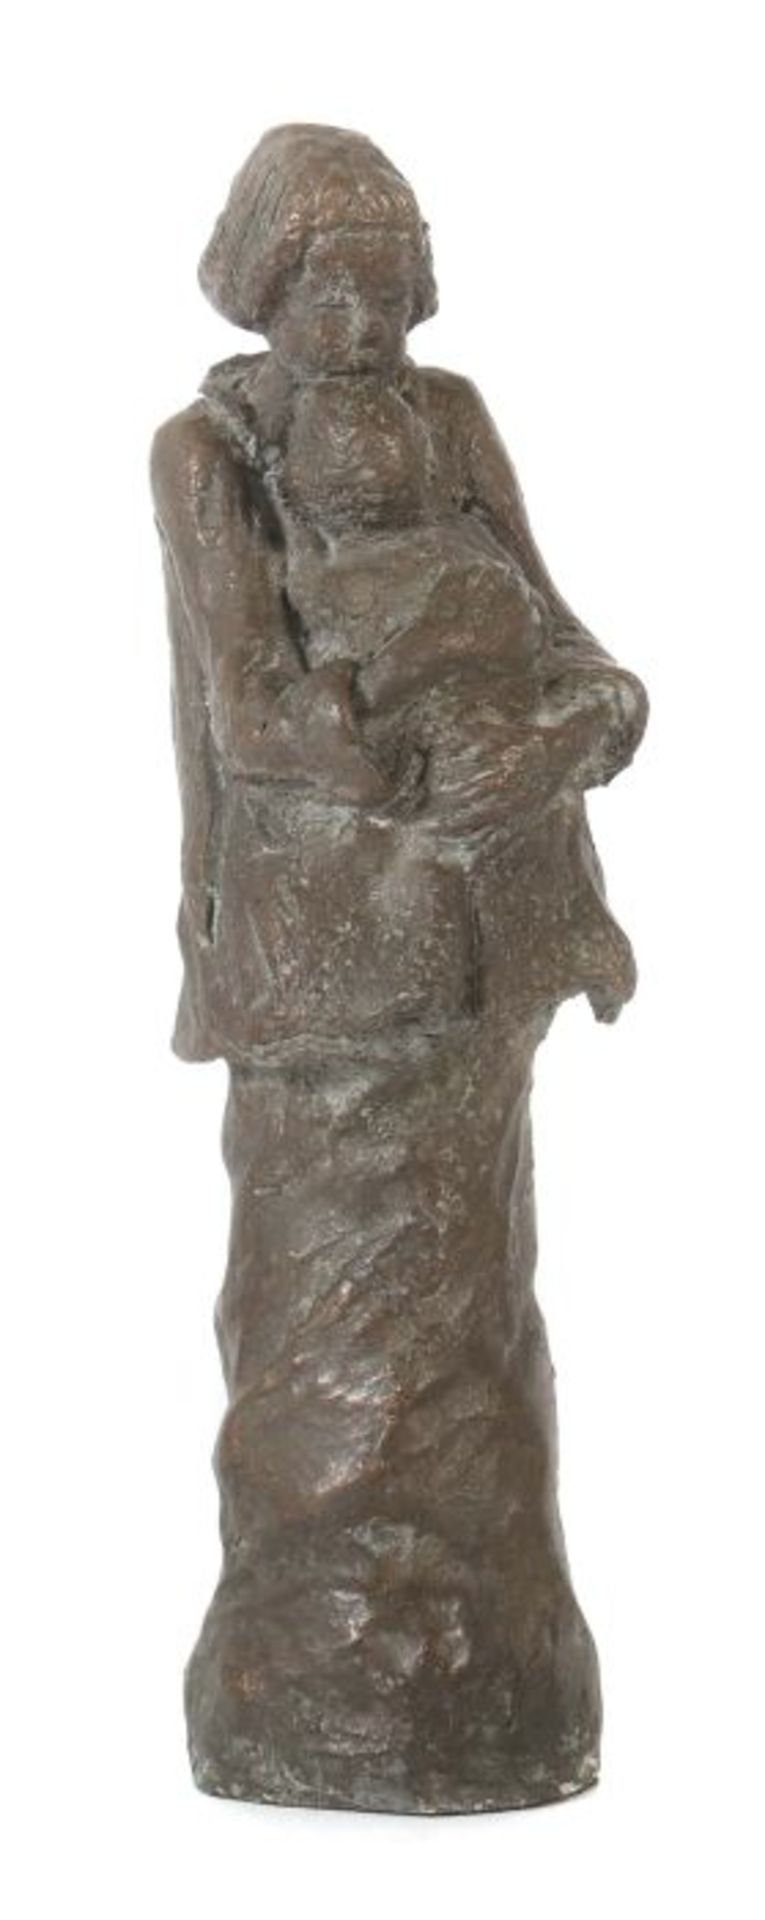 Bildhauer des 20. Jh. "Mutterliebe", Galvanoplastik, vollplastische Darstellung einer jungen